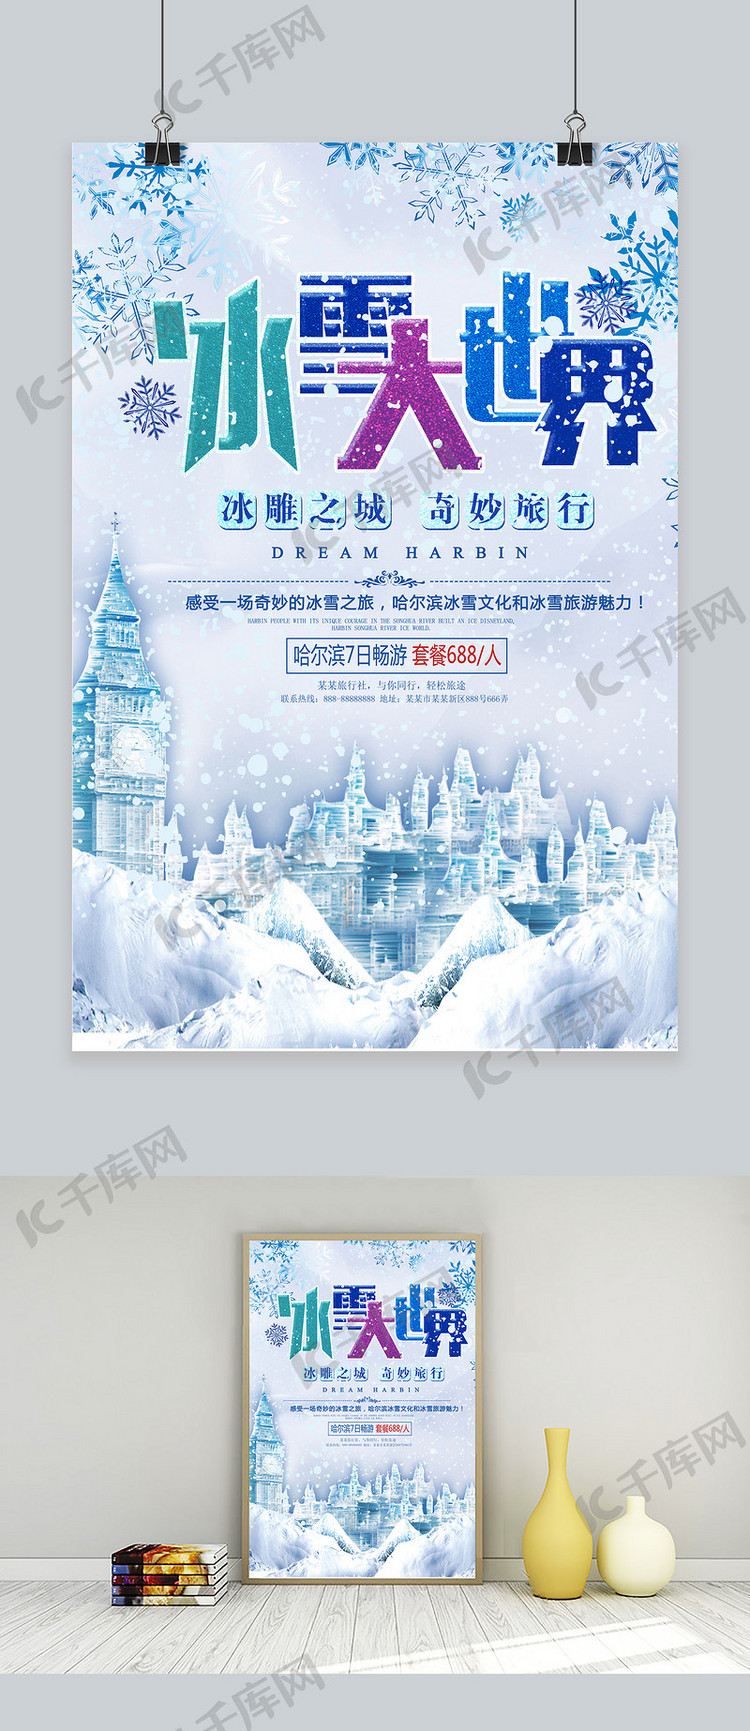 彩色哈尔滨冰雪大世界旅游宣传海报